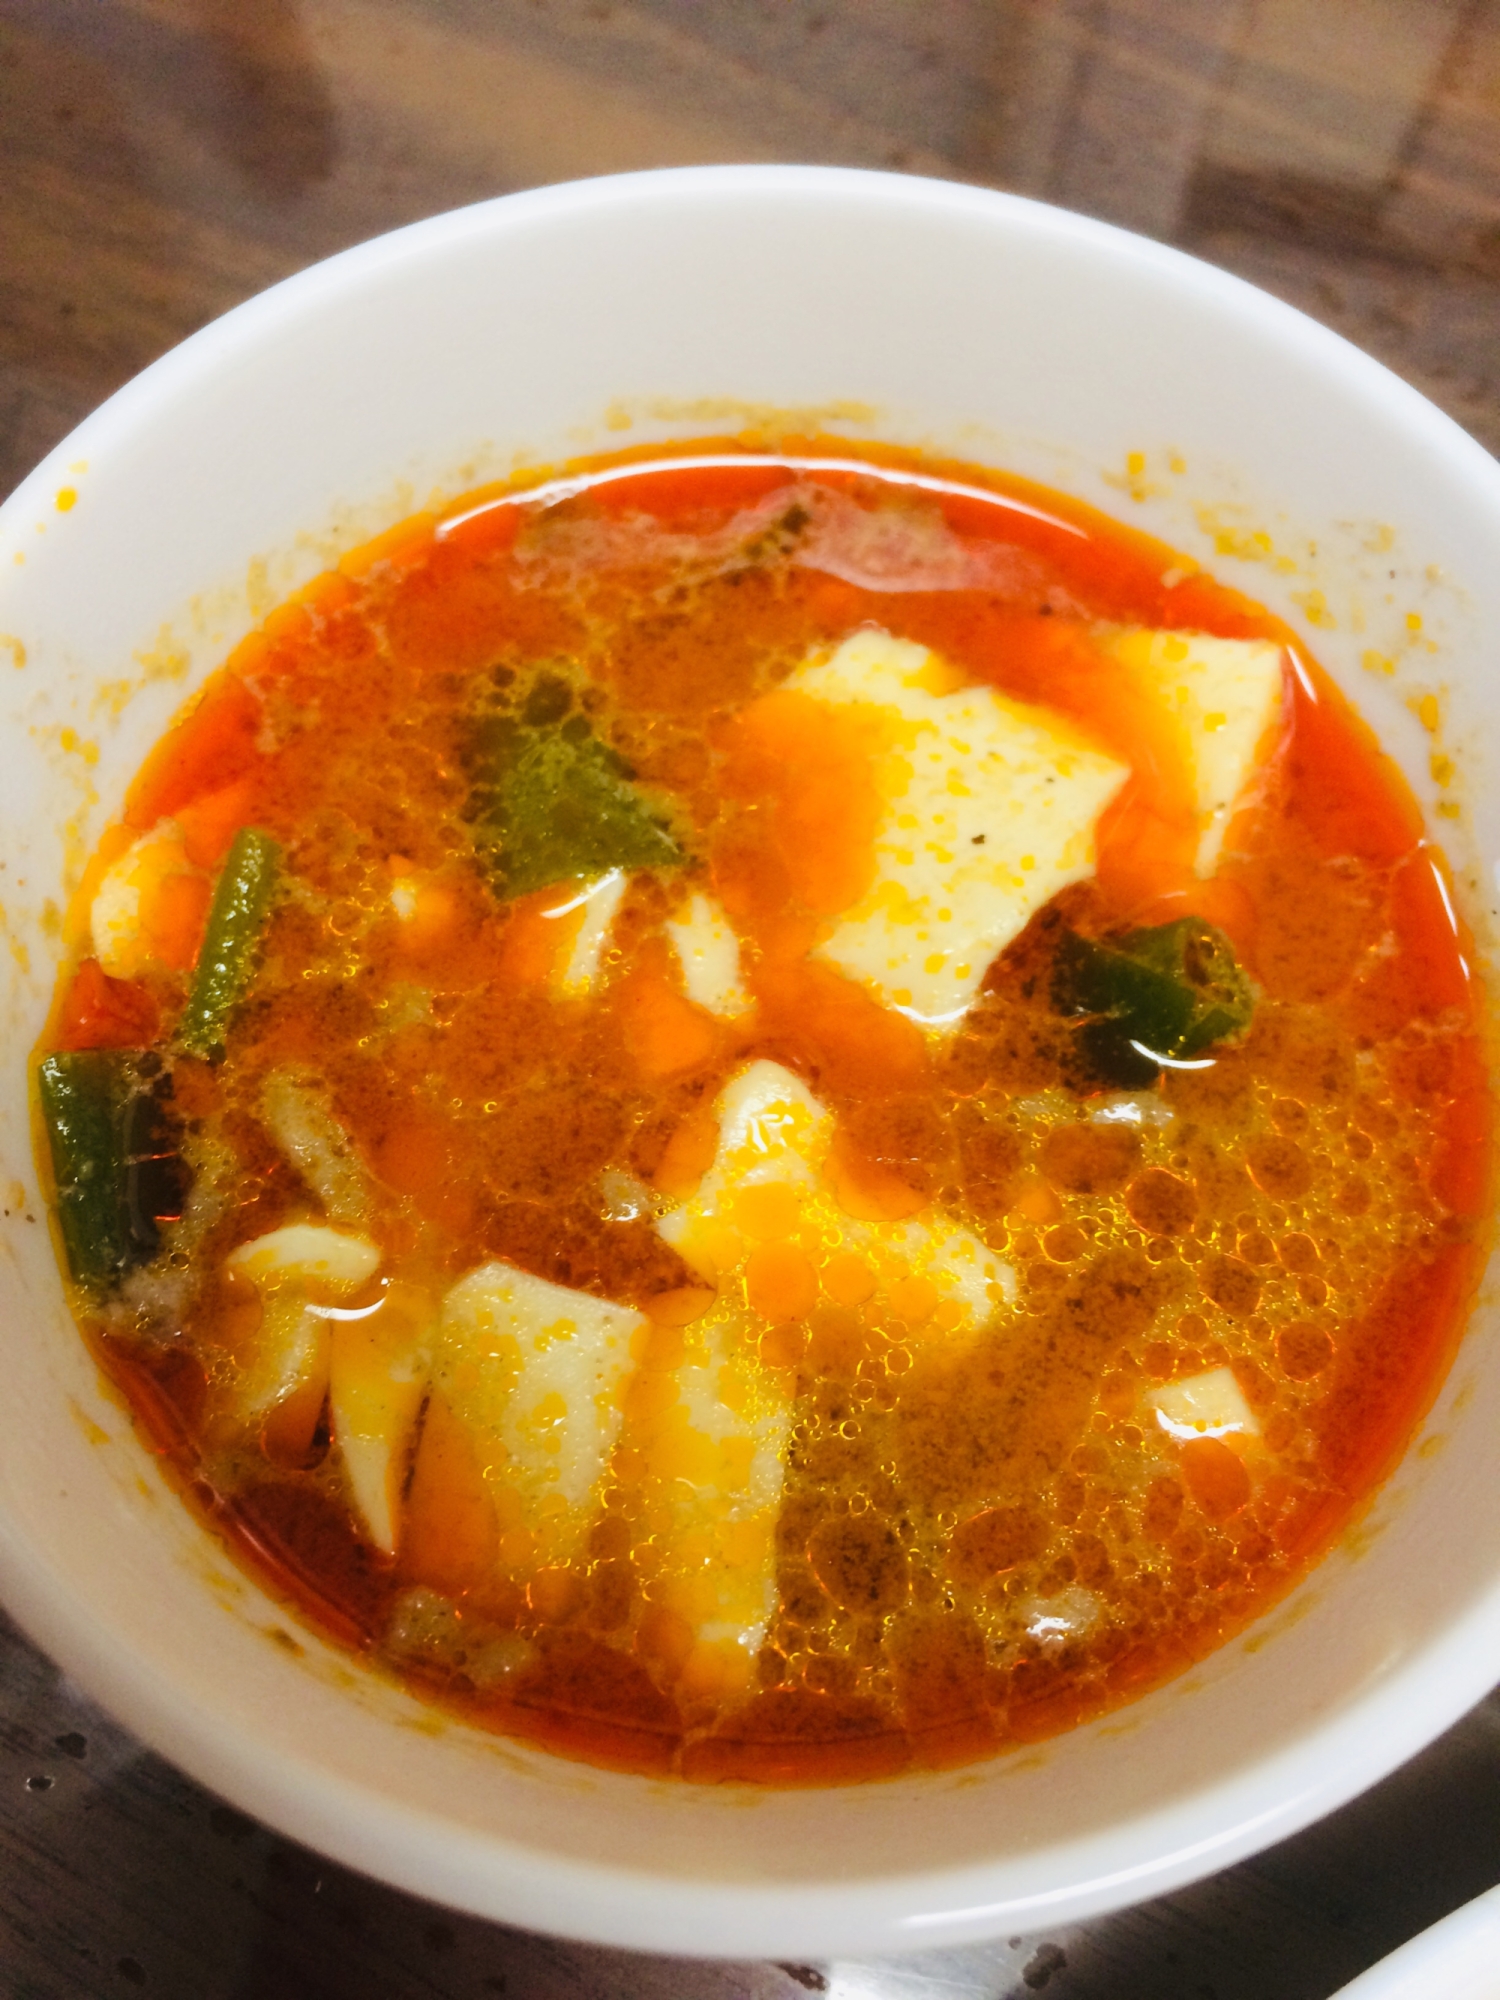 キムチ鍋の素で豆腐のスープ